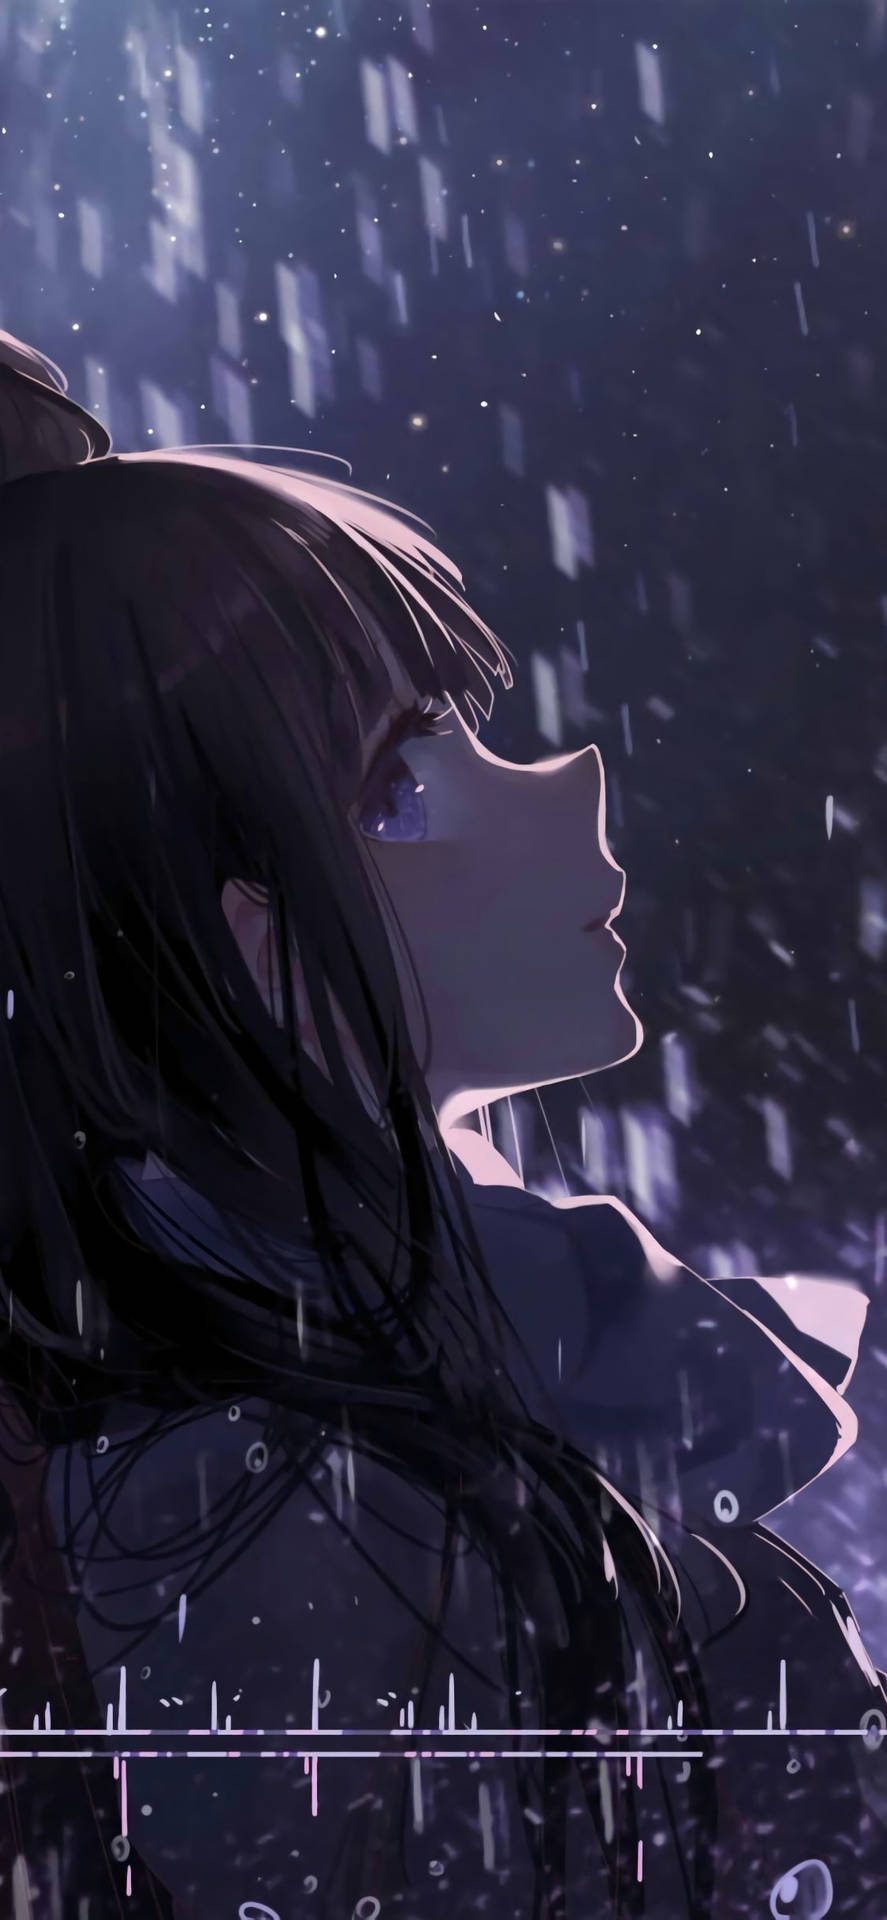 Sad Anime Girl Pouring Rain Wallpaper